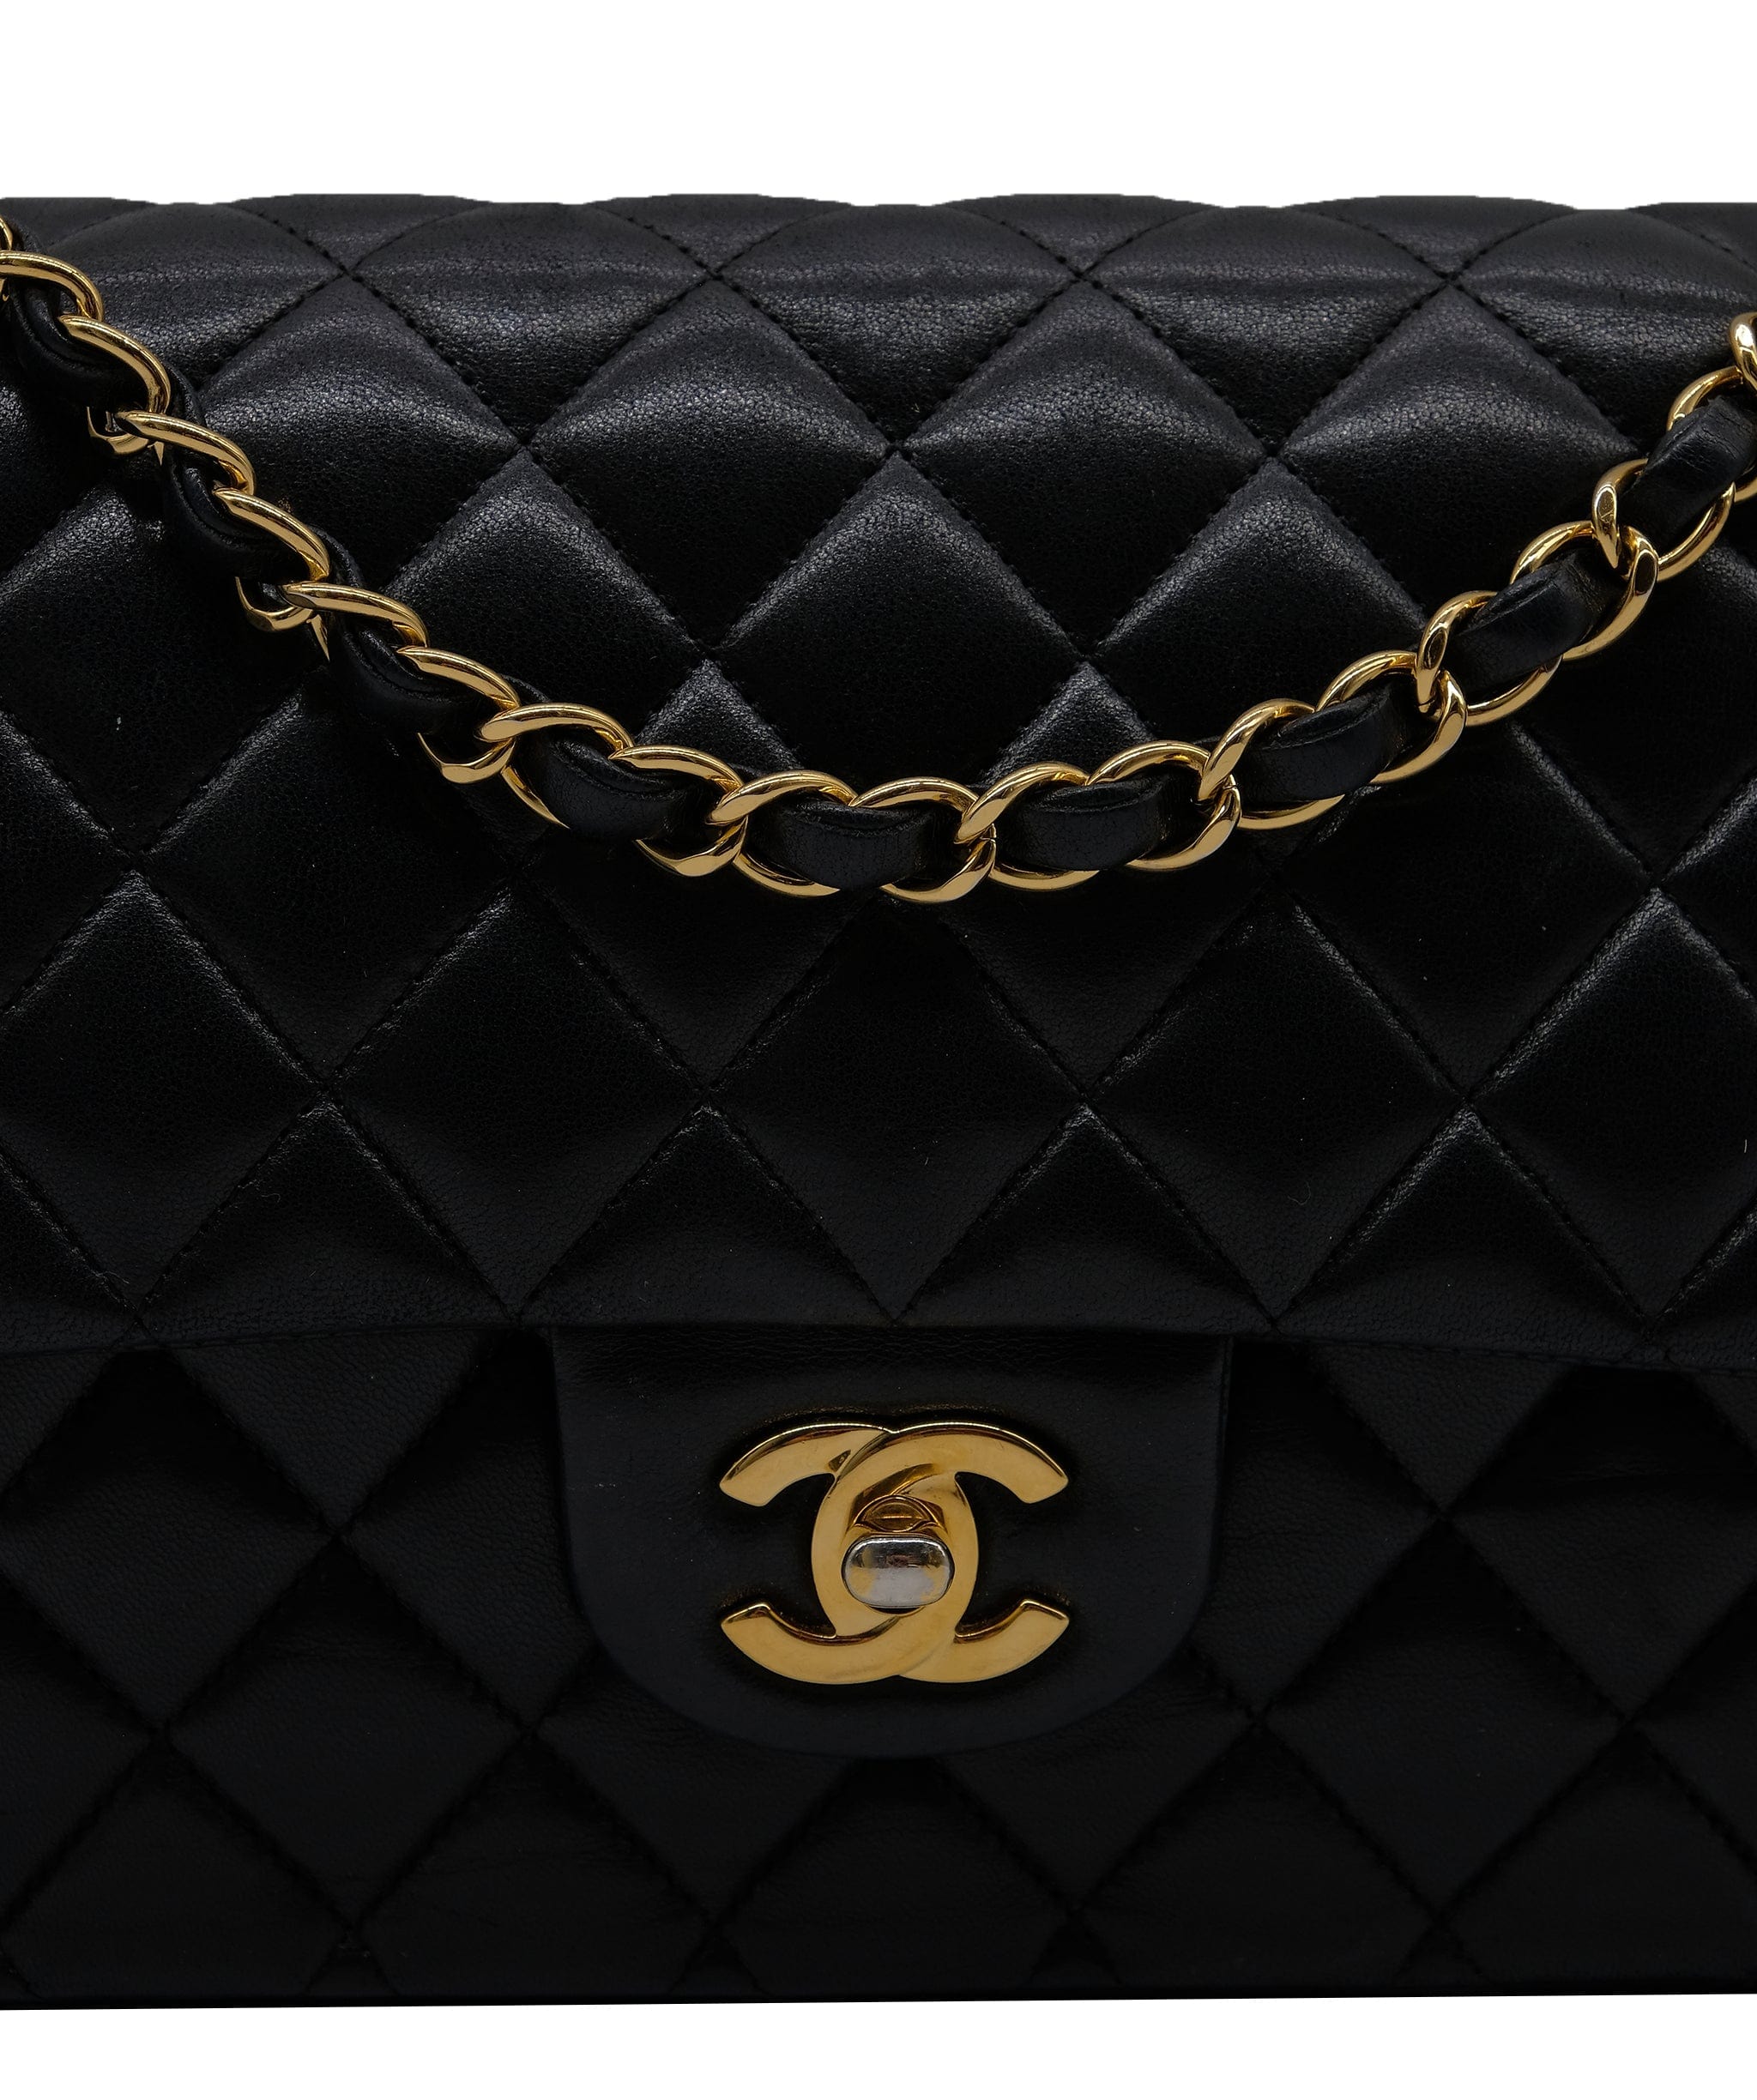 Chanel Chanel Med classic Flap Lambskin Black RJL1981